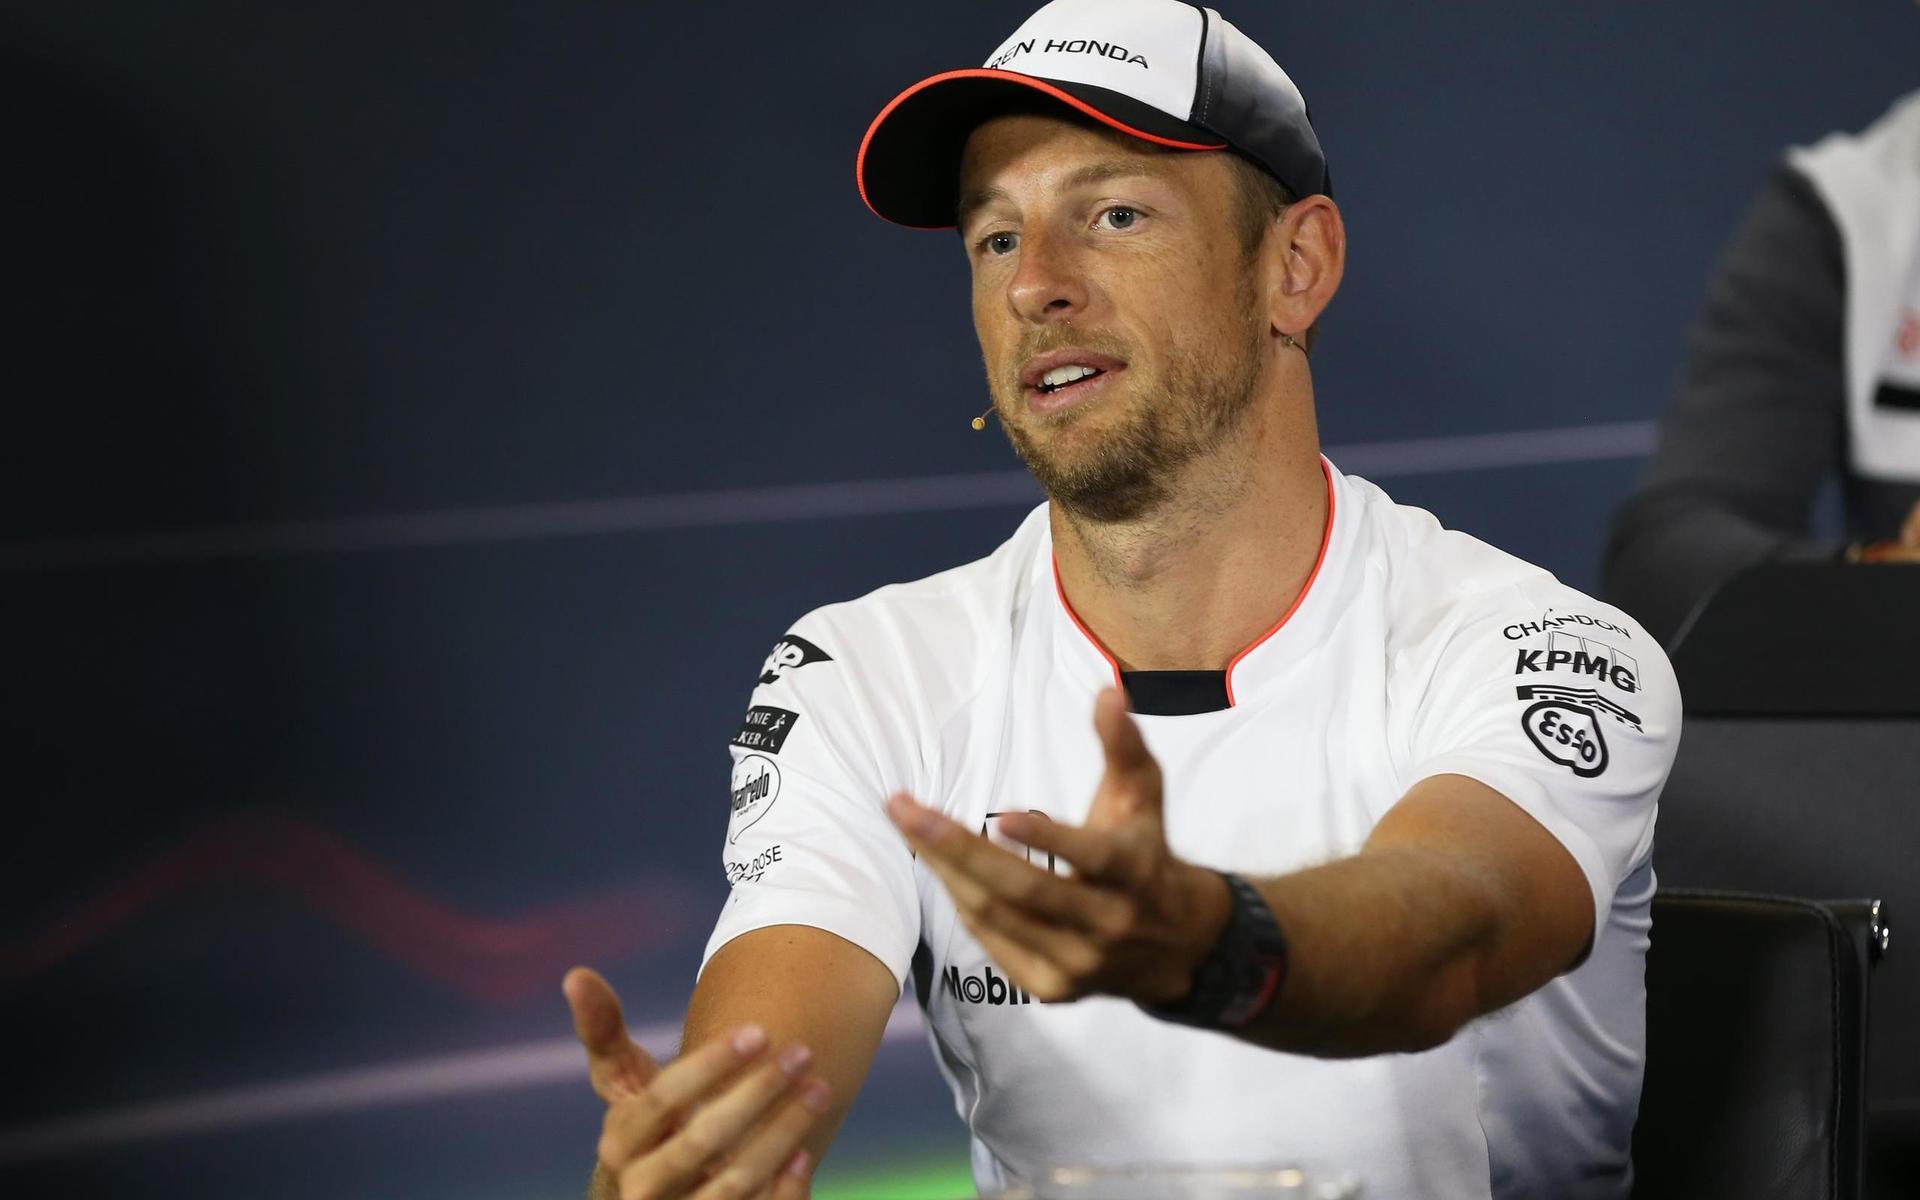 Förre F1-stjärnan Jenson Button rasar efter bilderna från karting-VM-finalen i Lonato. 